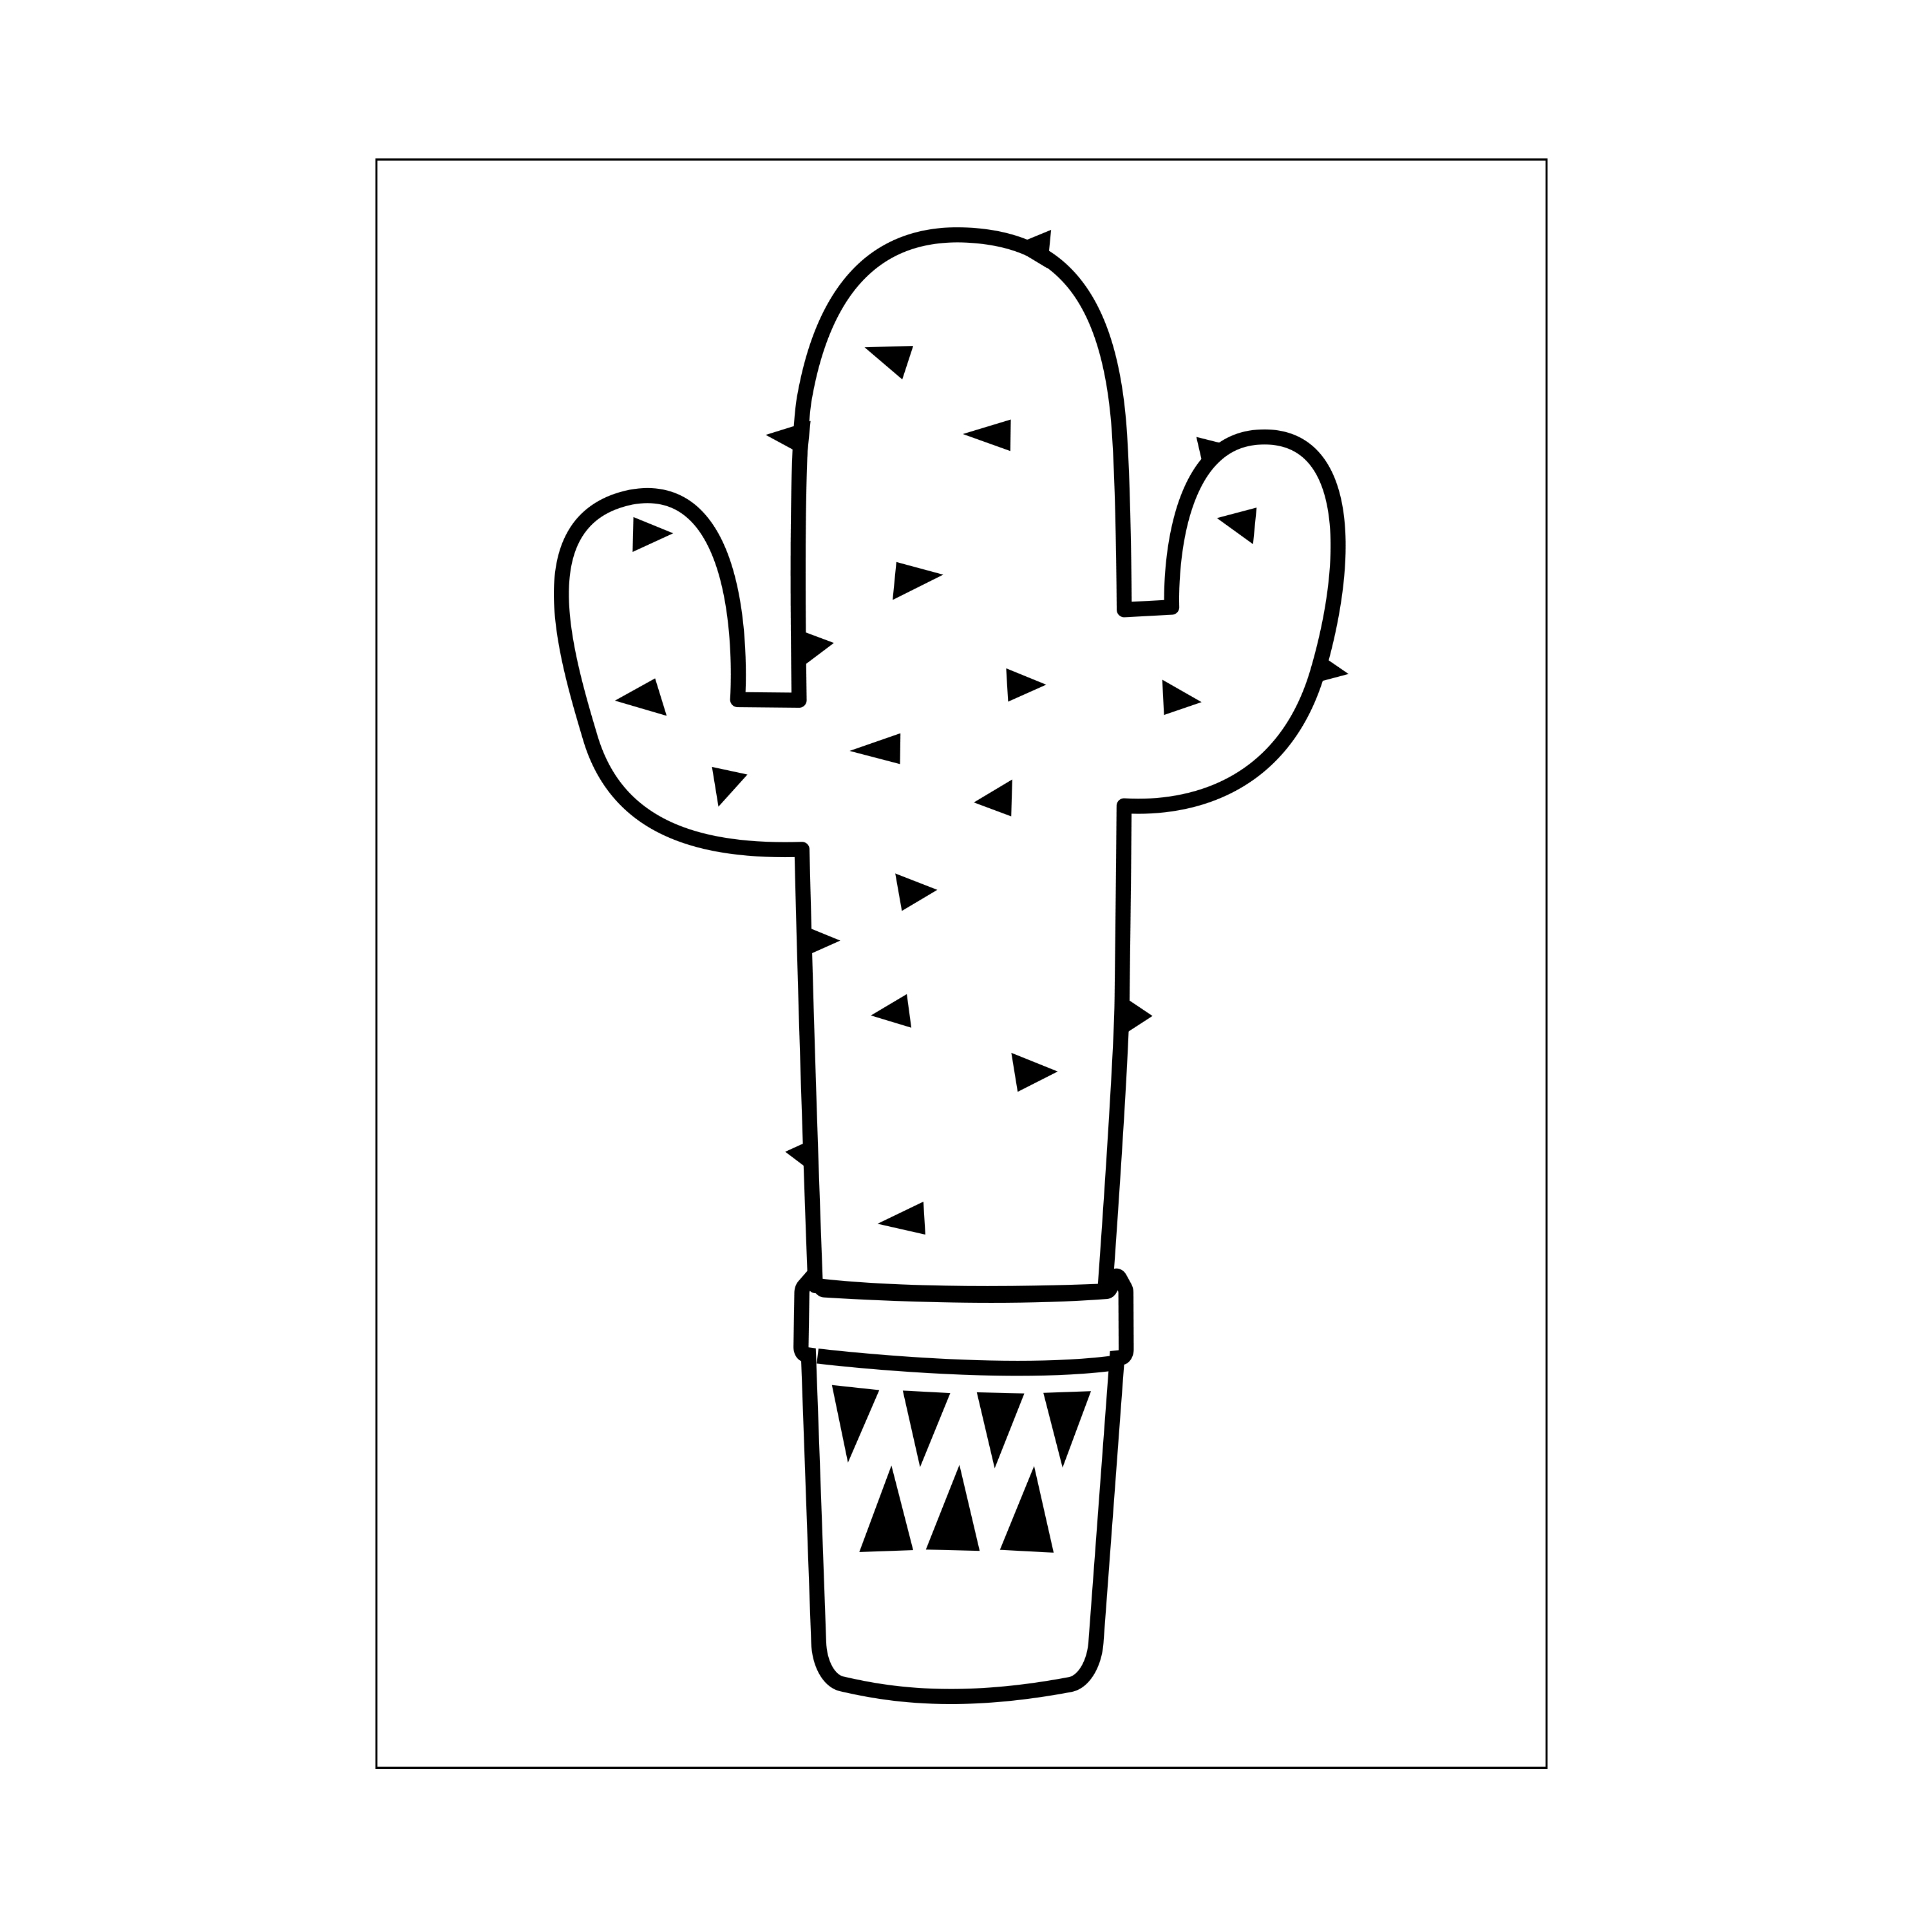 Darice • Embossing folder 3 Arms cactus